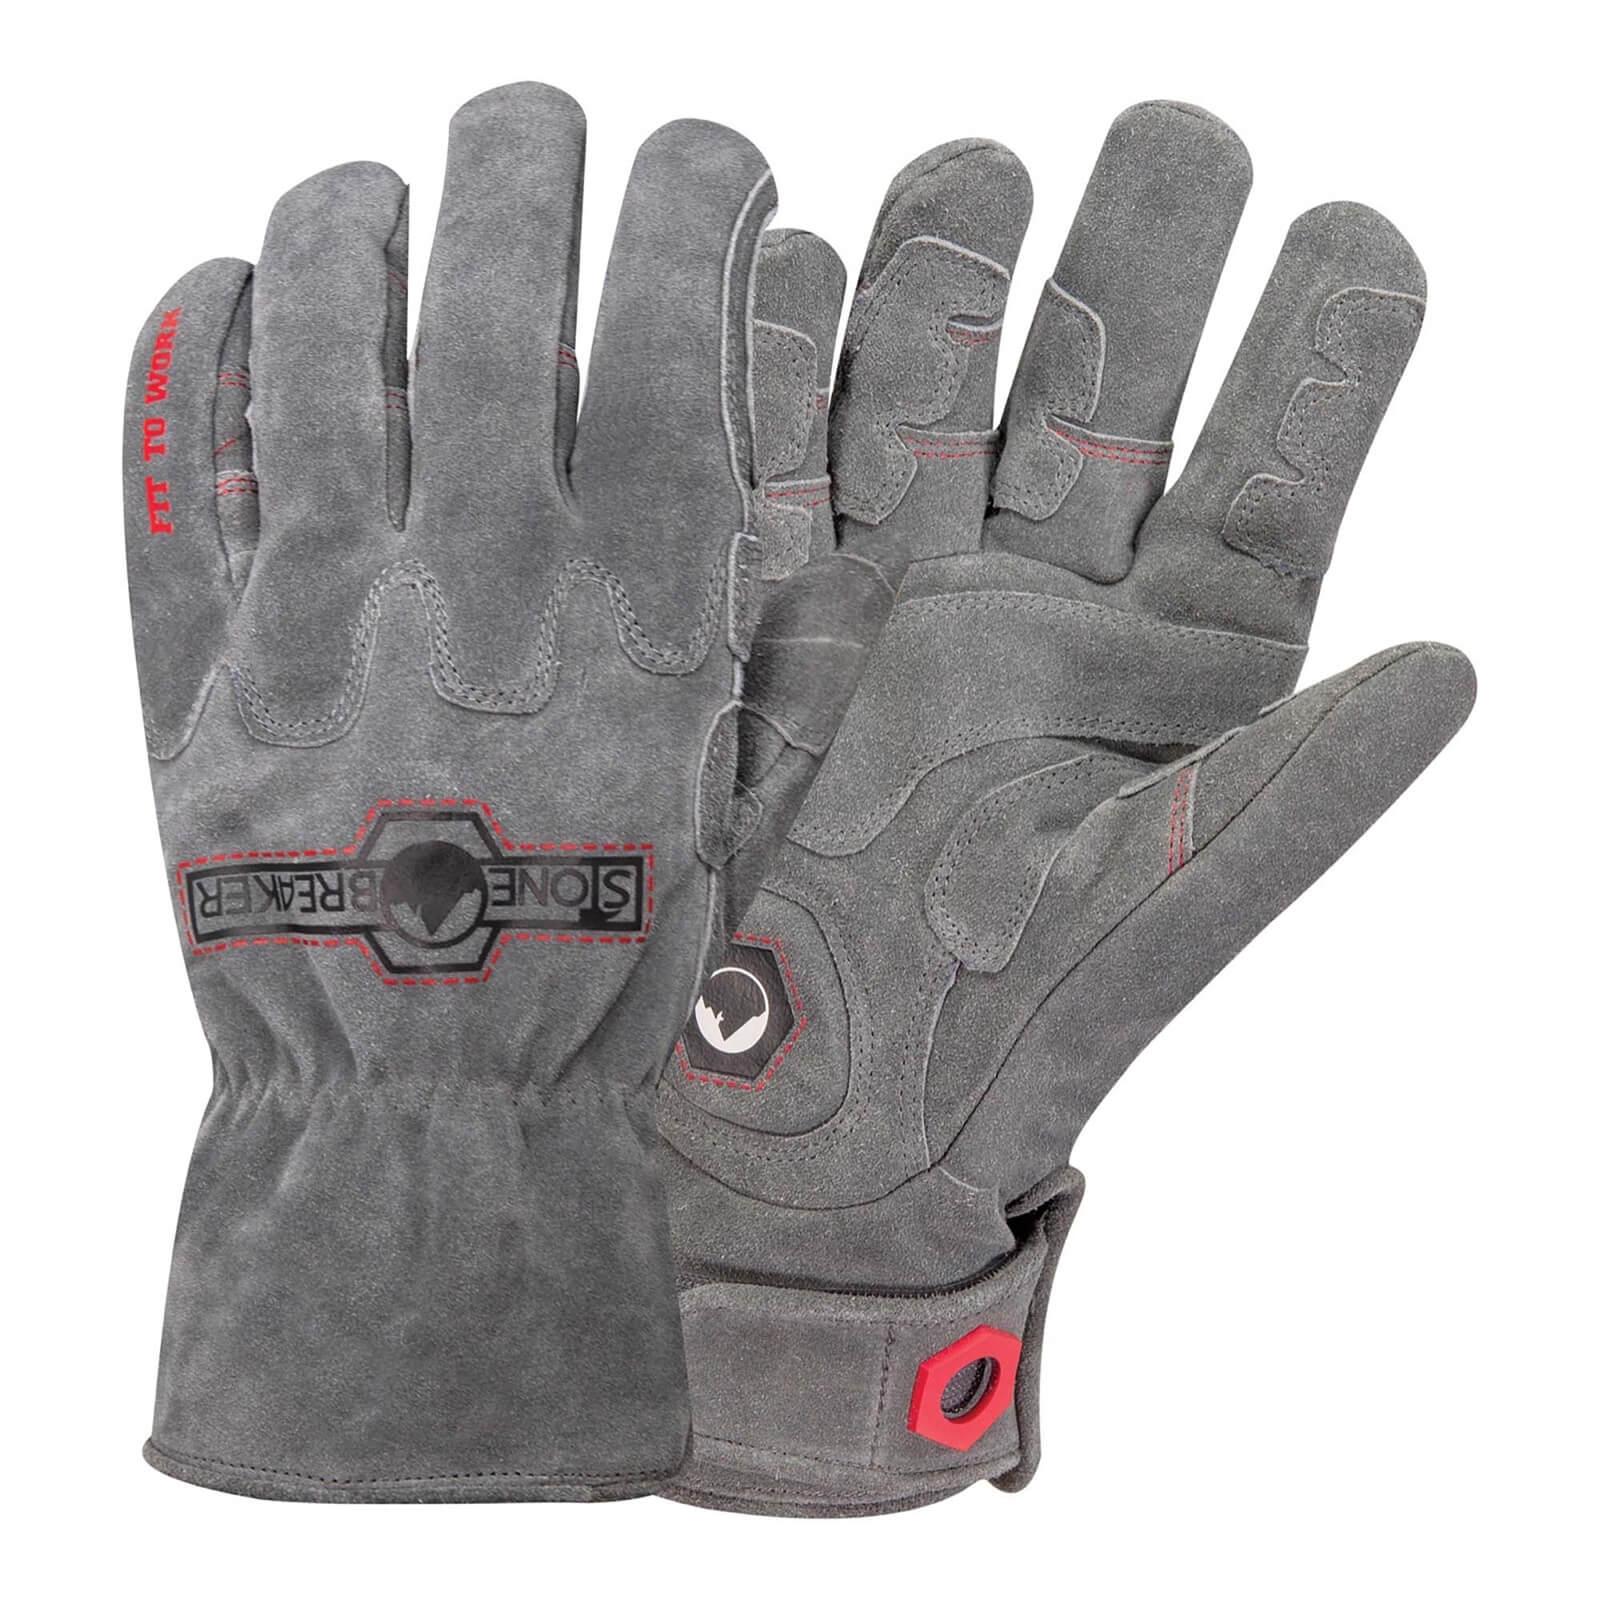 StoneBreaker Trades Winter Demolition Gloves - Medium - Grey